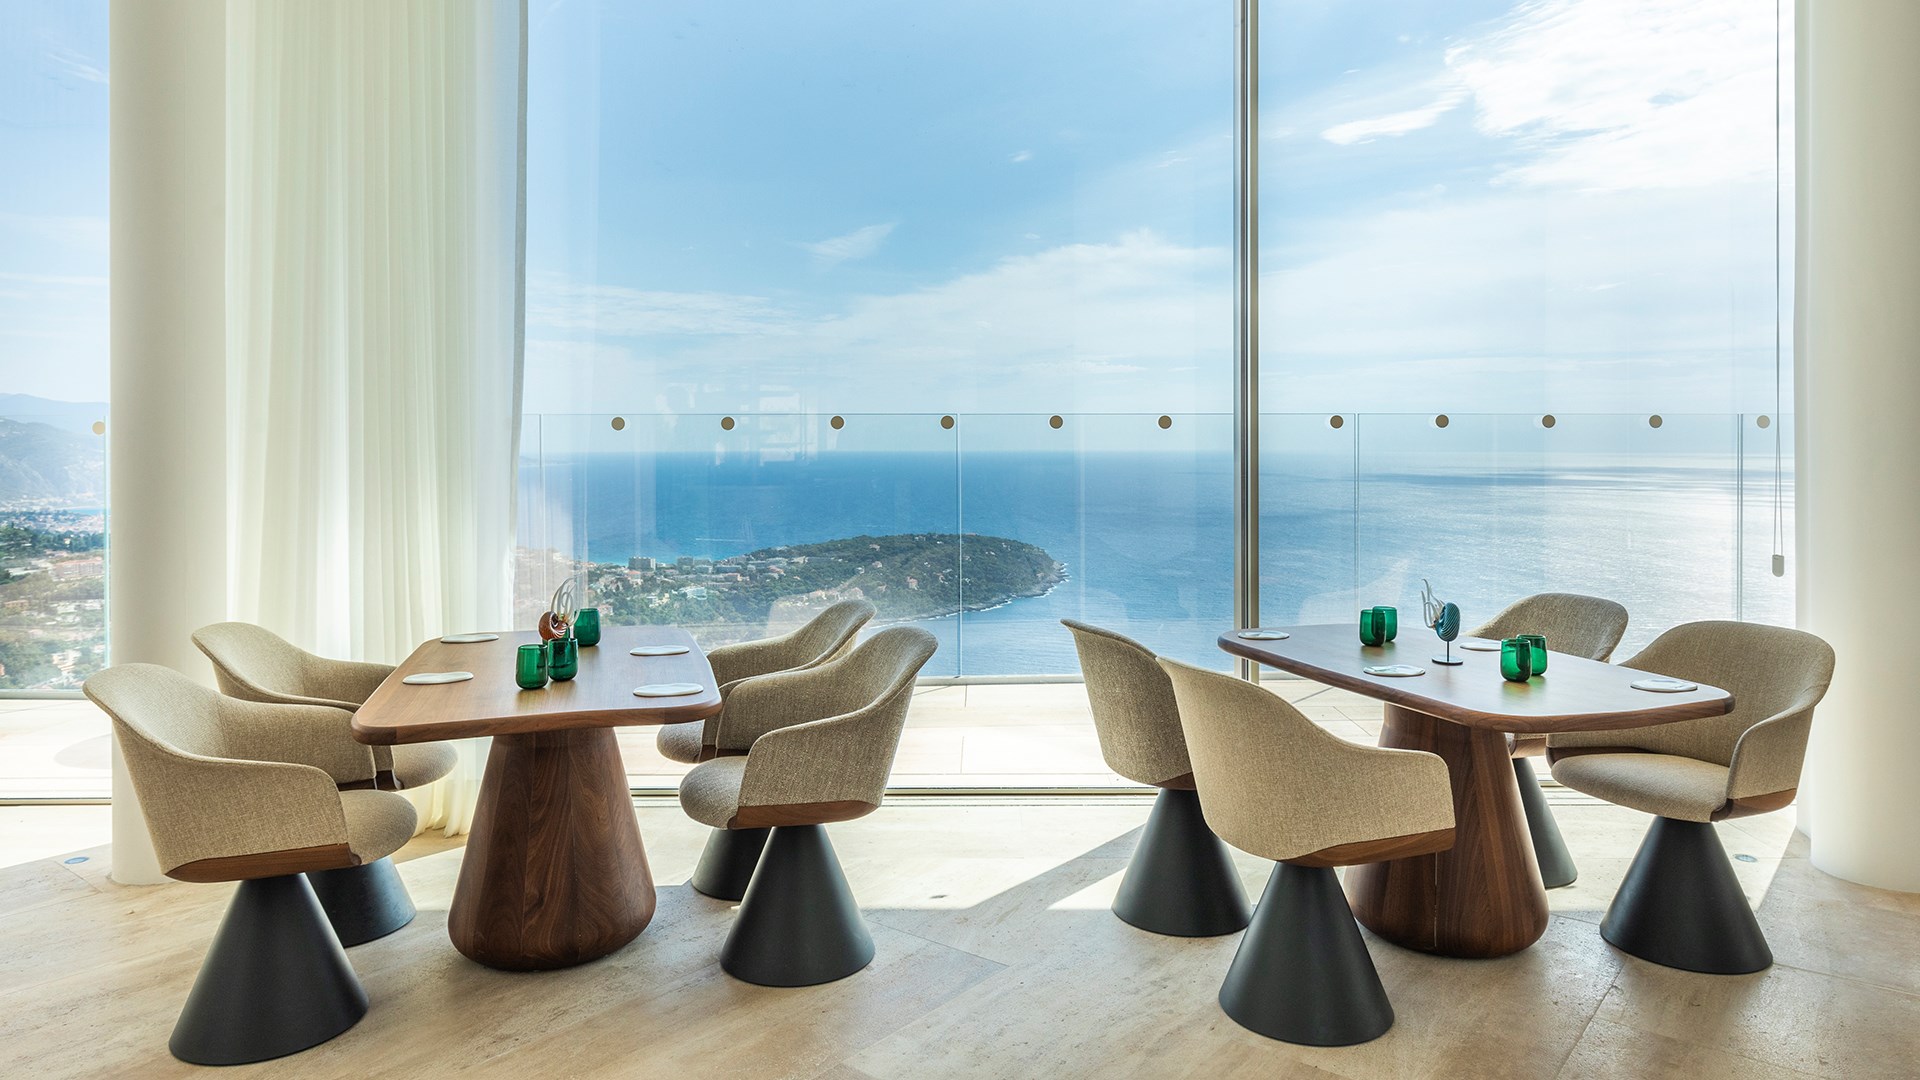 La salle du restaurant Ceto avec une grande baie vitrée donnant sur la mer